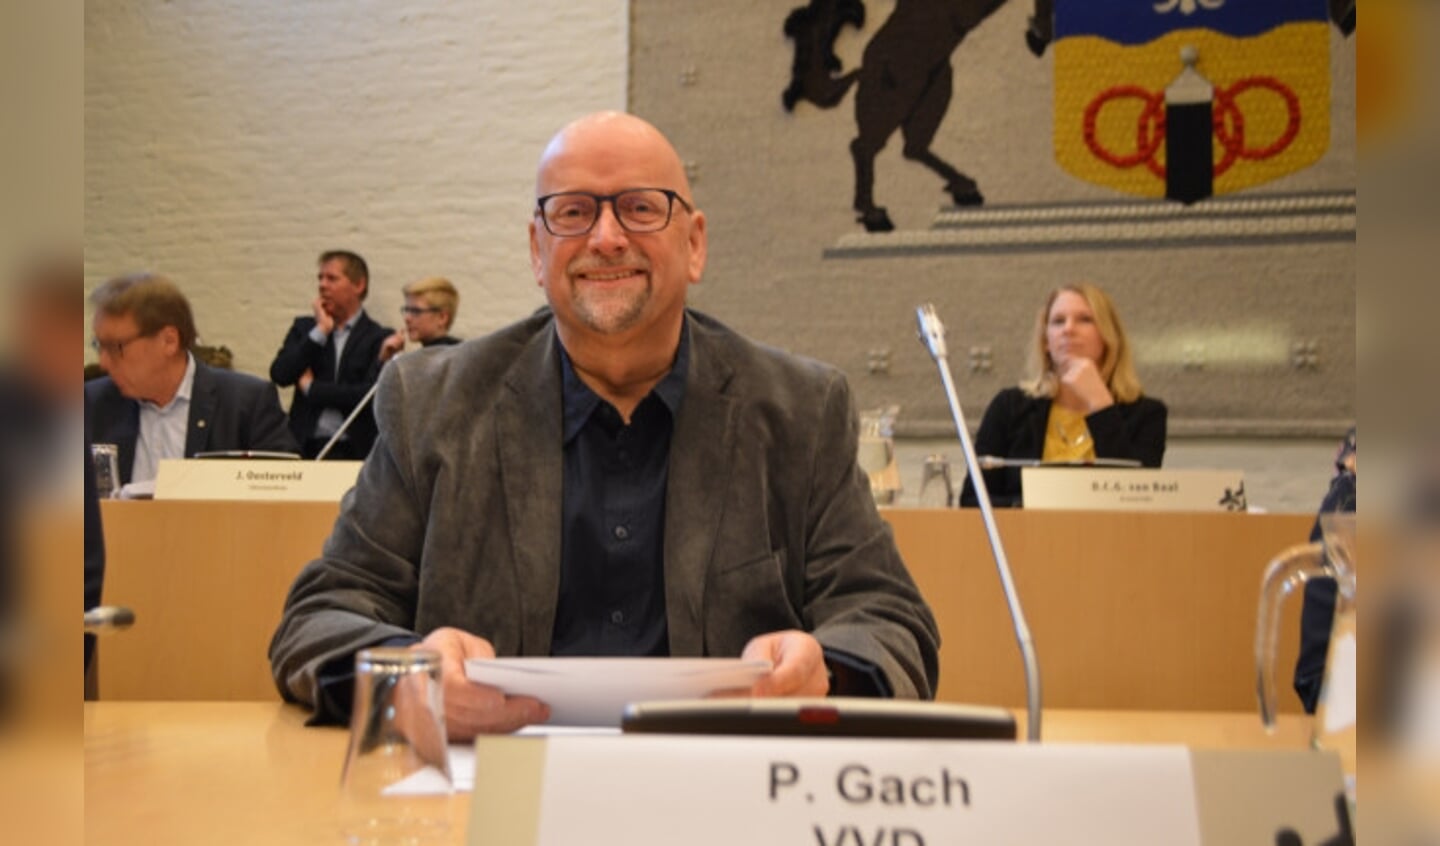  Paul Gach (VVD)